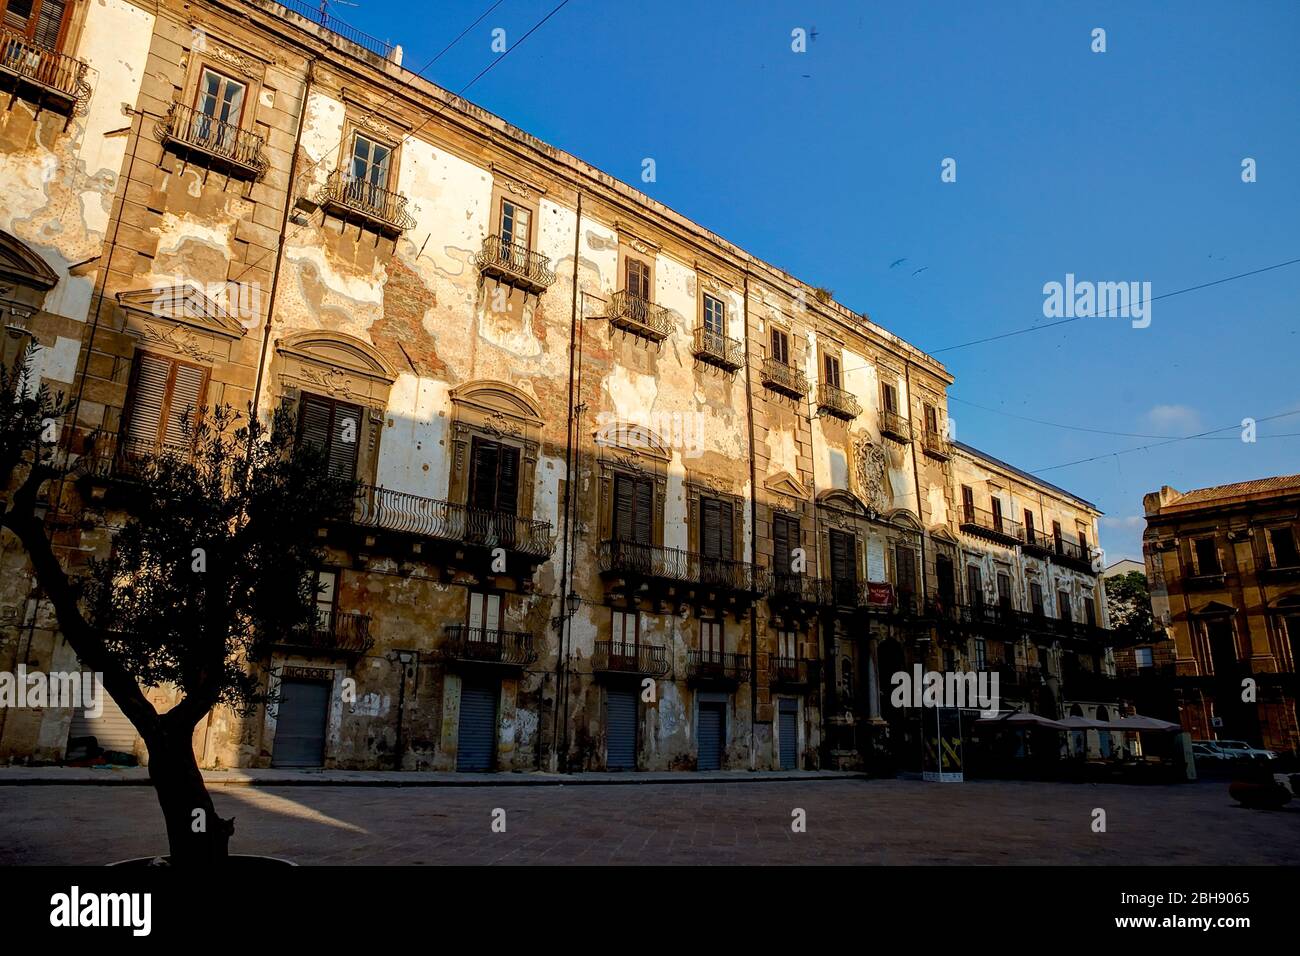 Palermo, Altstadt, piazza mit altem langgestrecktem Gebäude, das im Abendlicht renoviert werden soll, abblätternder Putz Stockfoto